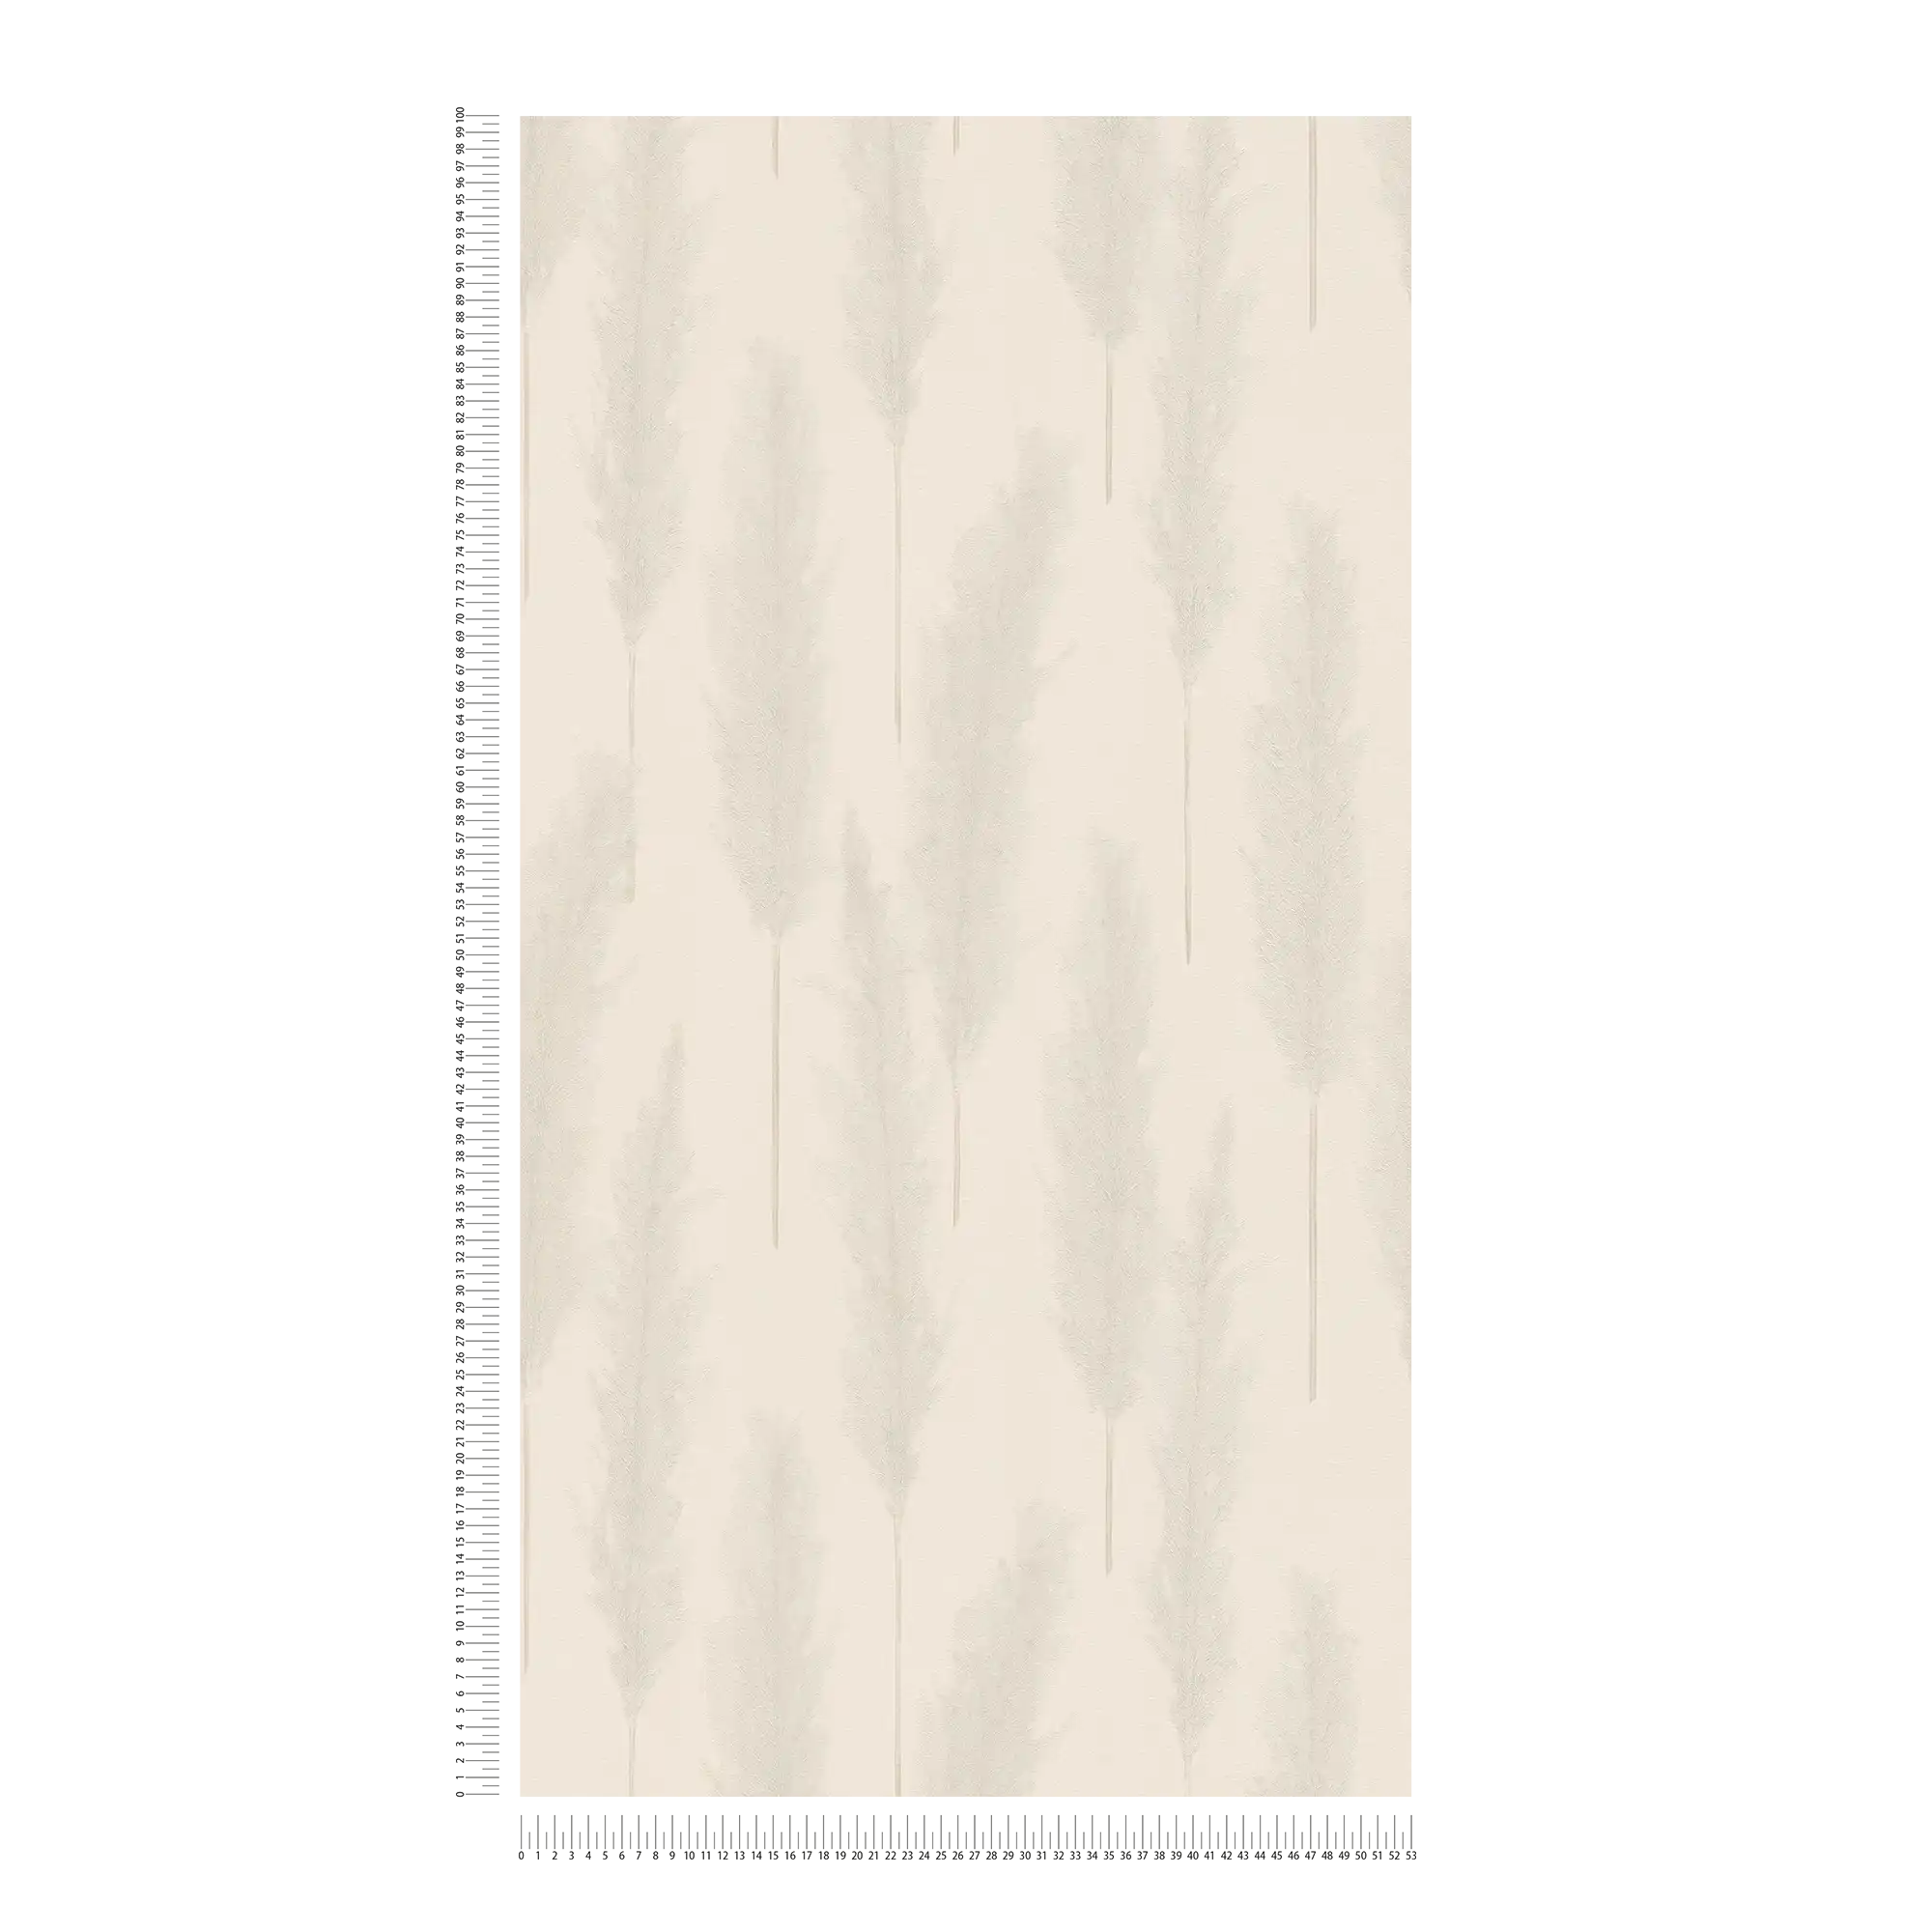             Tapete mit Pampasgras Muster – Beige, Grau, Weiß
        